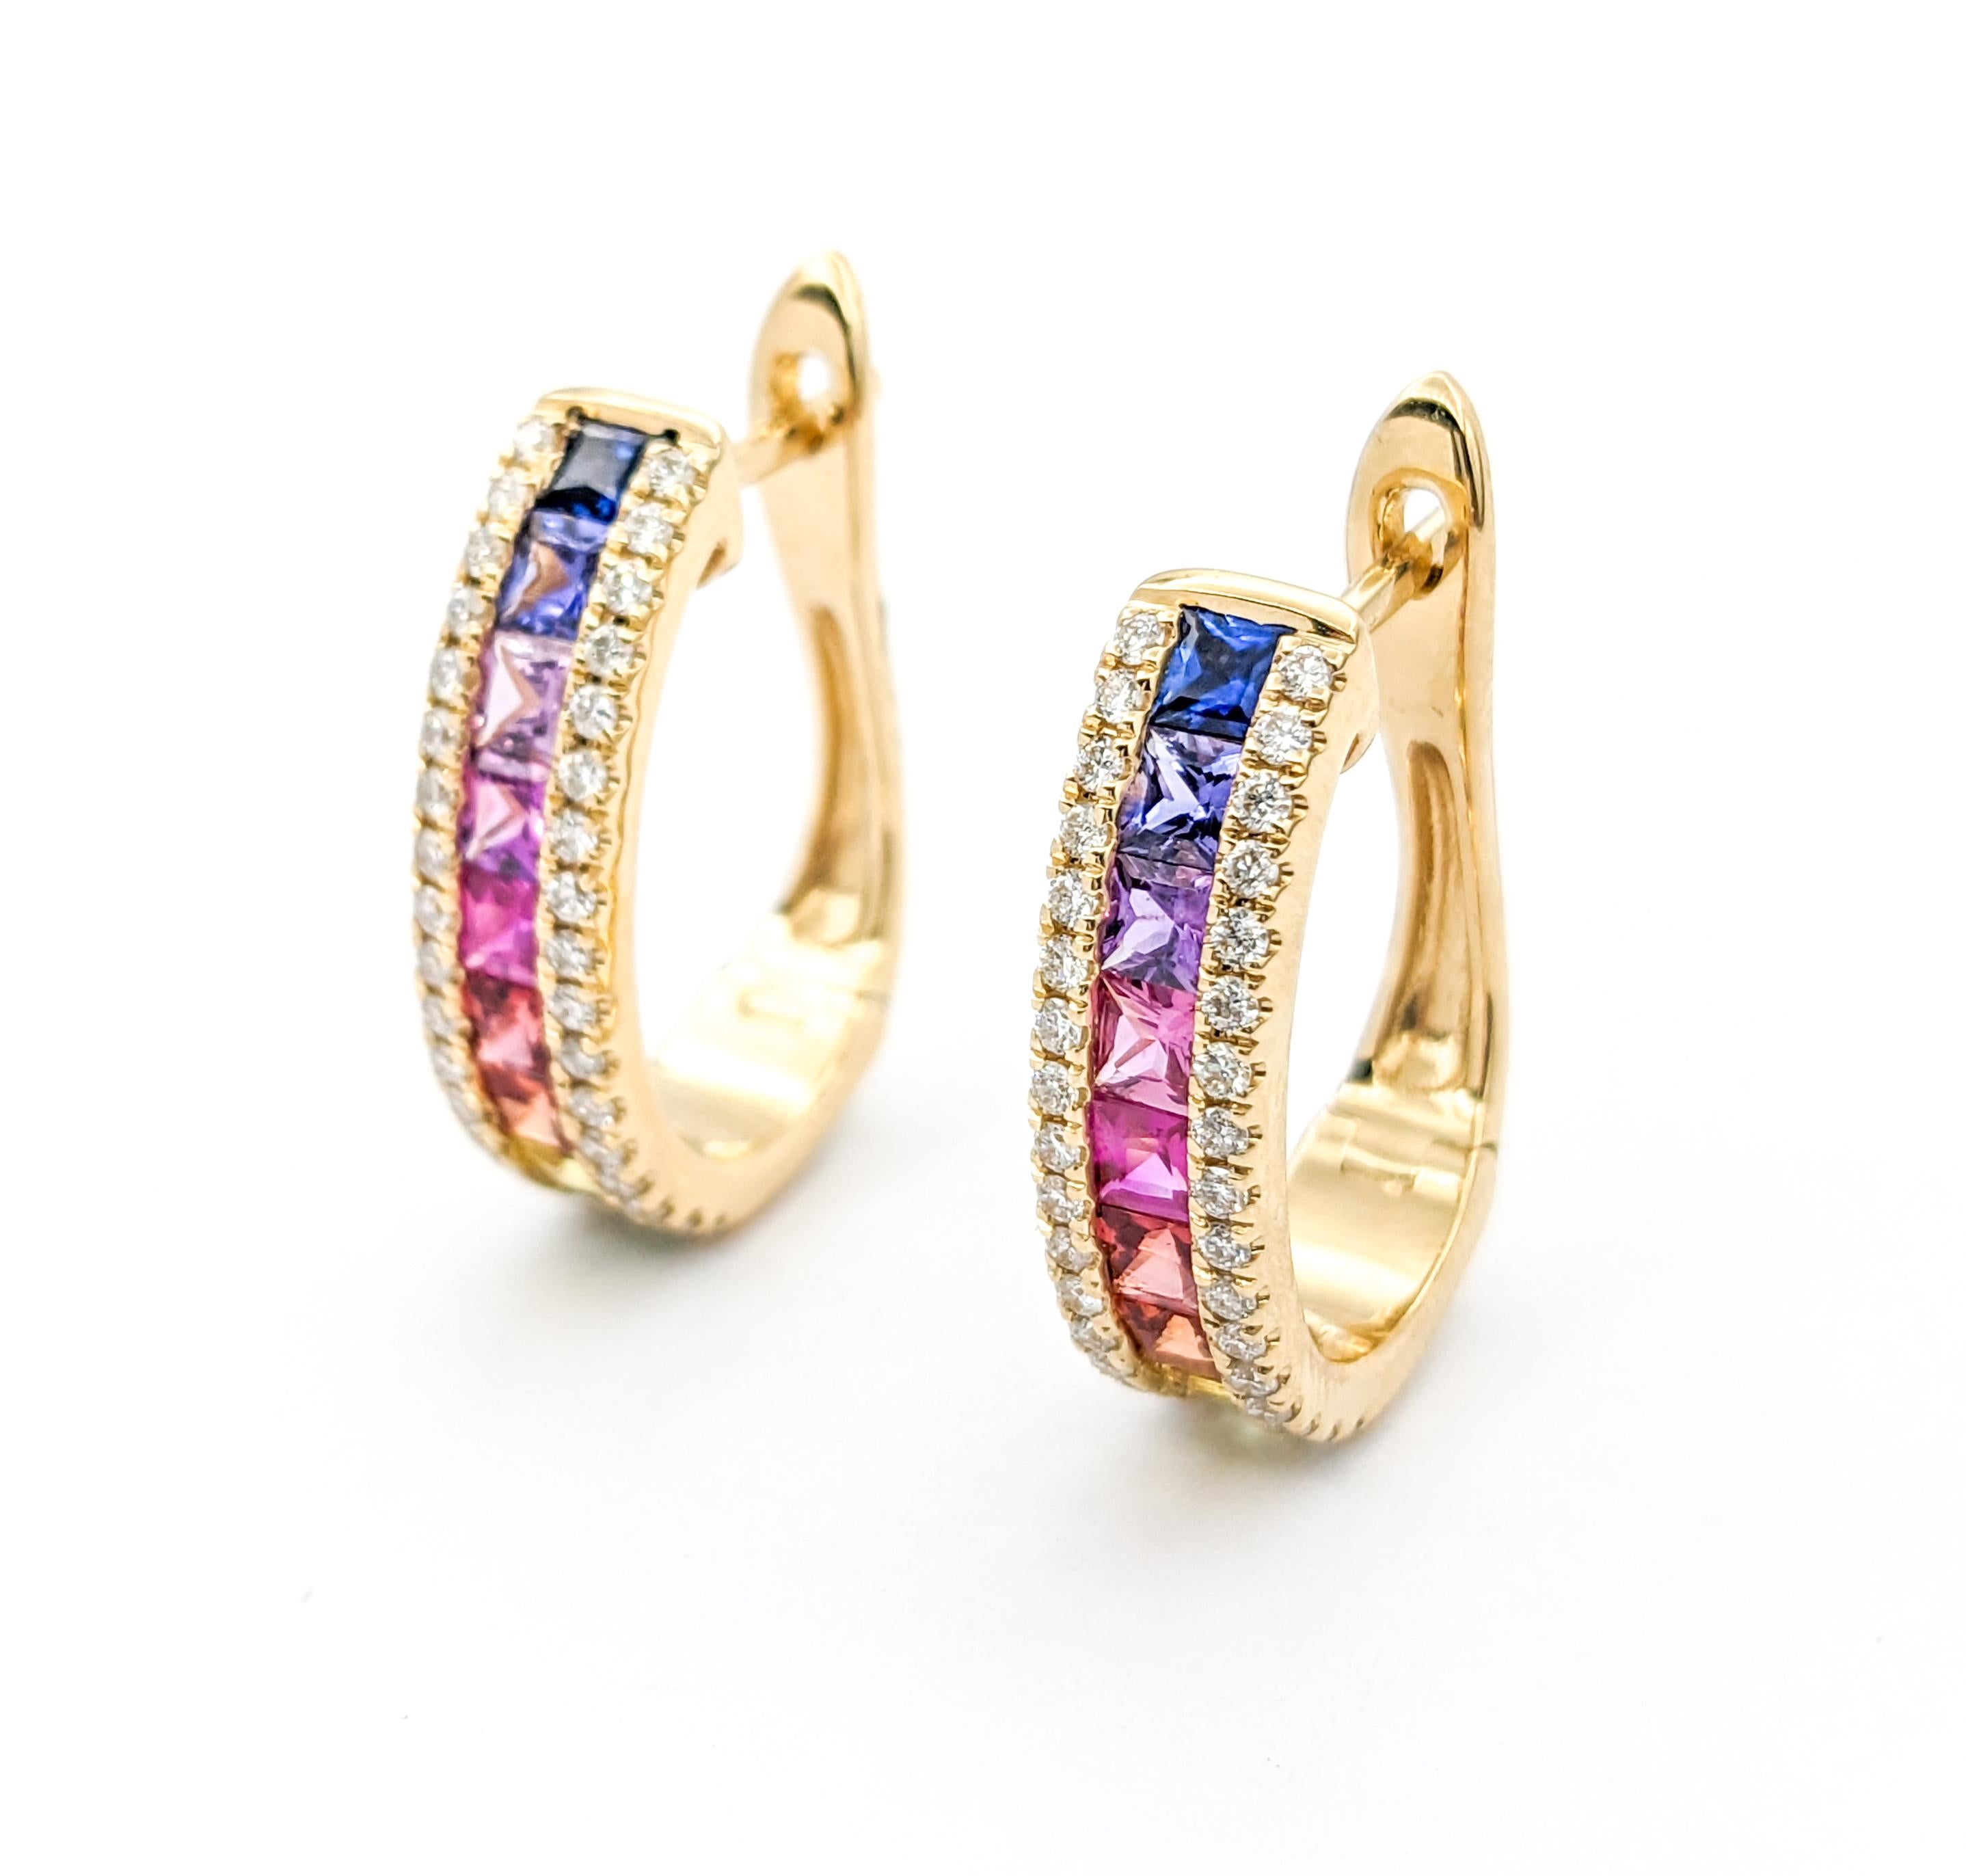 1,85ctw Multi-Color Saphire & Diamant LeverBack Hoop Ohrringe in Gelbgold

Wir stellen diese wunderschönen Edelstein-Ohrringe aus 14 Karat Gelbgold vor, die mit 0,45 ct Diamanten und 1,85 ct mehrfarbigen Saphiren besetzt sind. Die Diamanten weisen